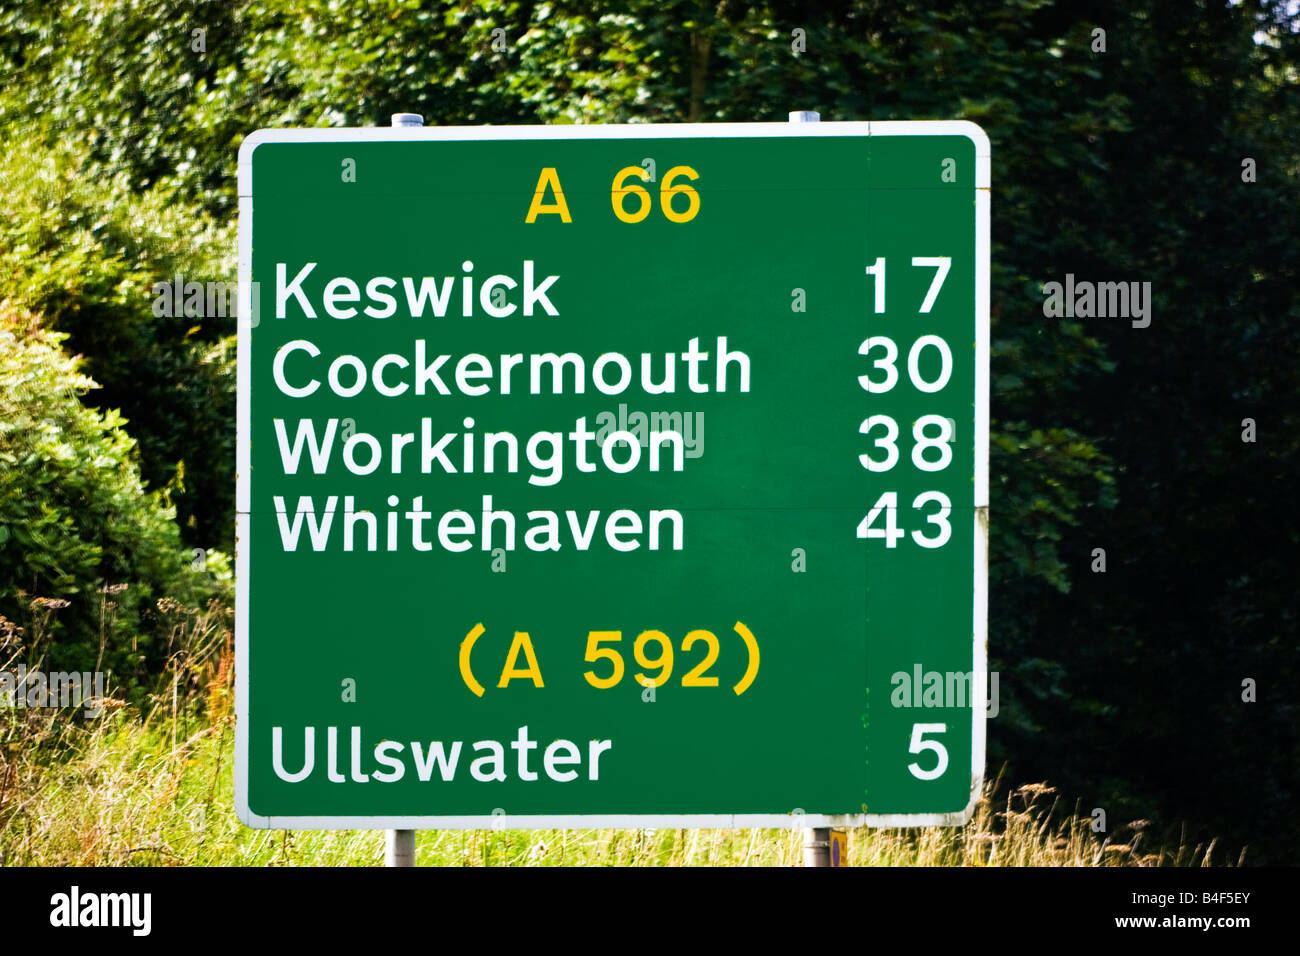 Green UK 'A' signe de route sur la route A66 avec les informations de distance, England, UK Banque D'Images